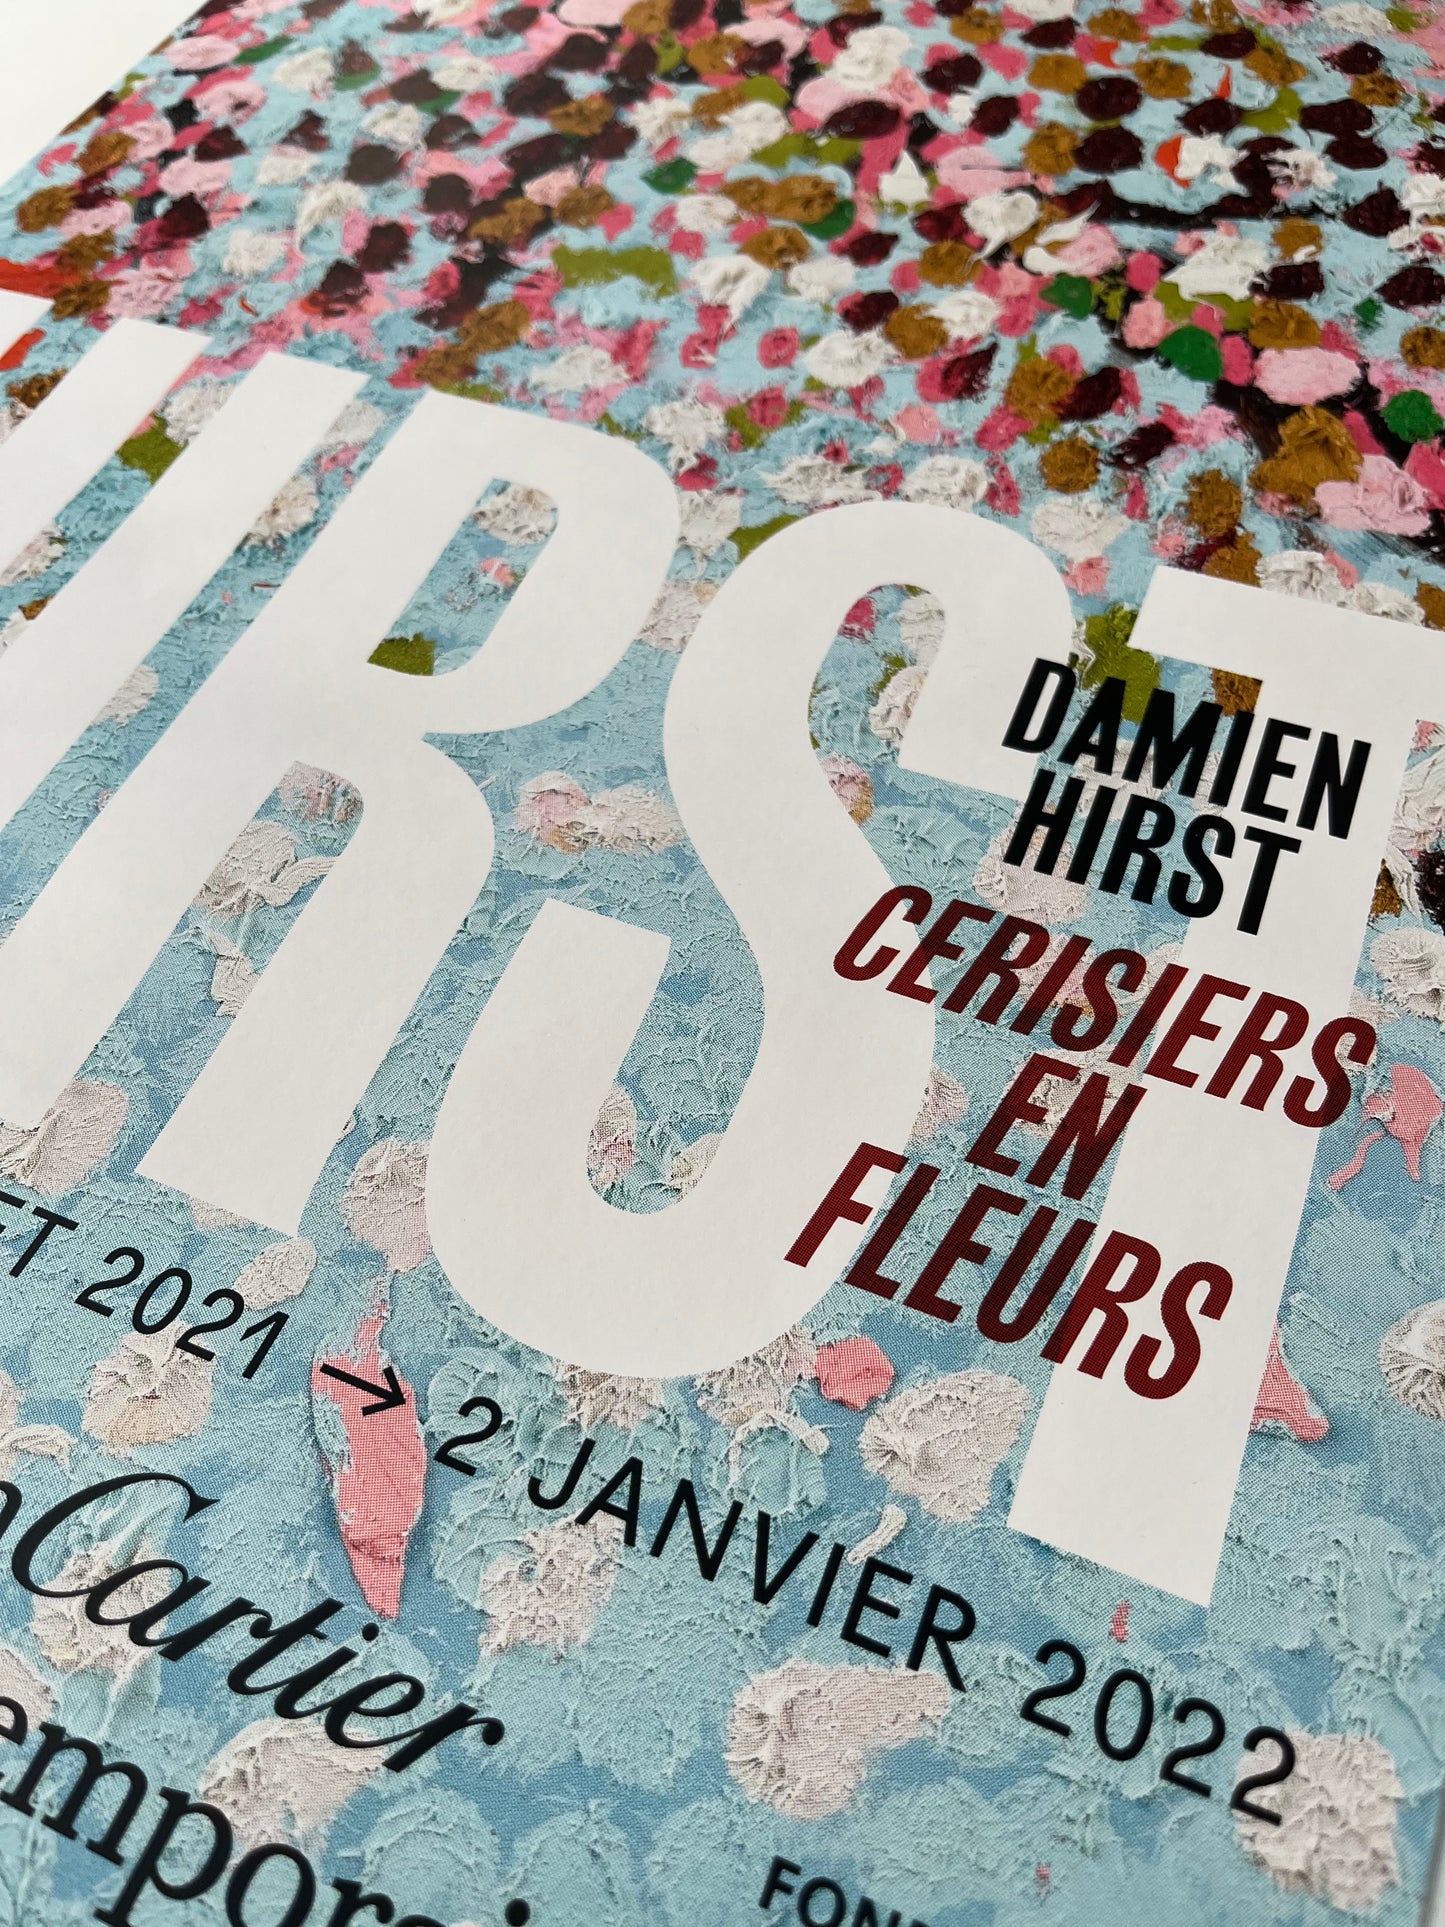 Damien Hirst x Fondation Cartier Paris© “Fiori di ciliegio”, manifesto originale della mostra